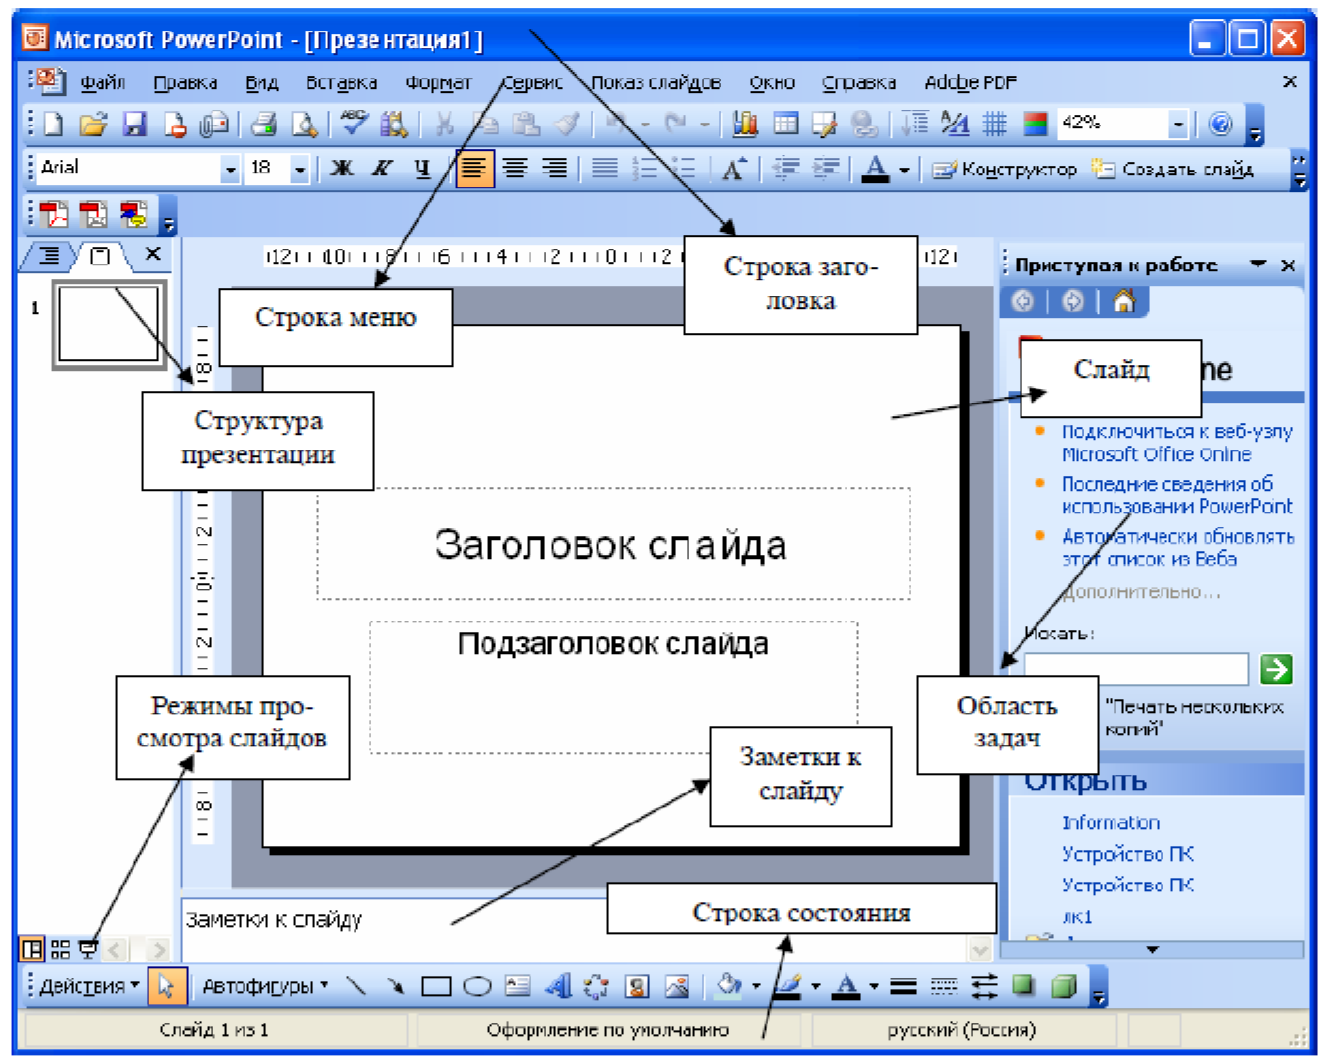 Павер поінт. Структура окна MS POWERPOINT. Панель инструментов повер поинт 2007. Окно программы MS POWERPOINT. Основные элементы окна повер поинт.